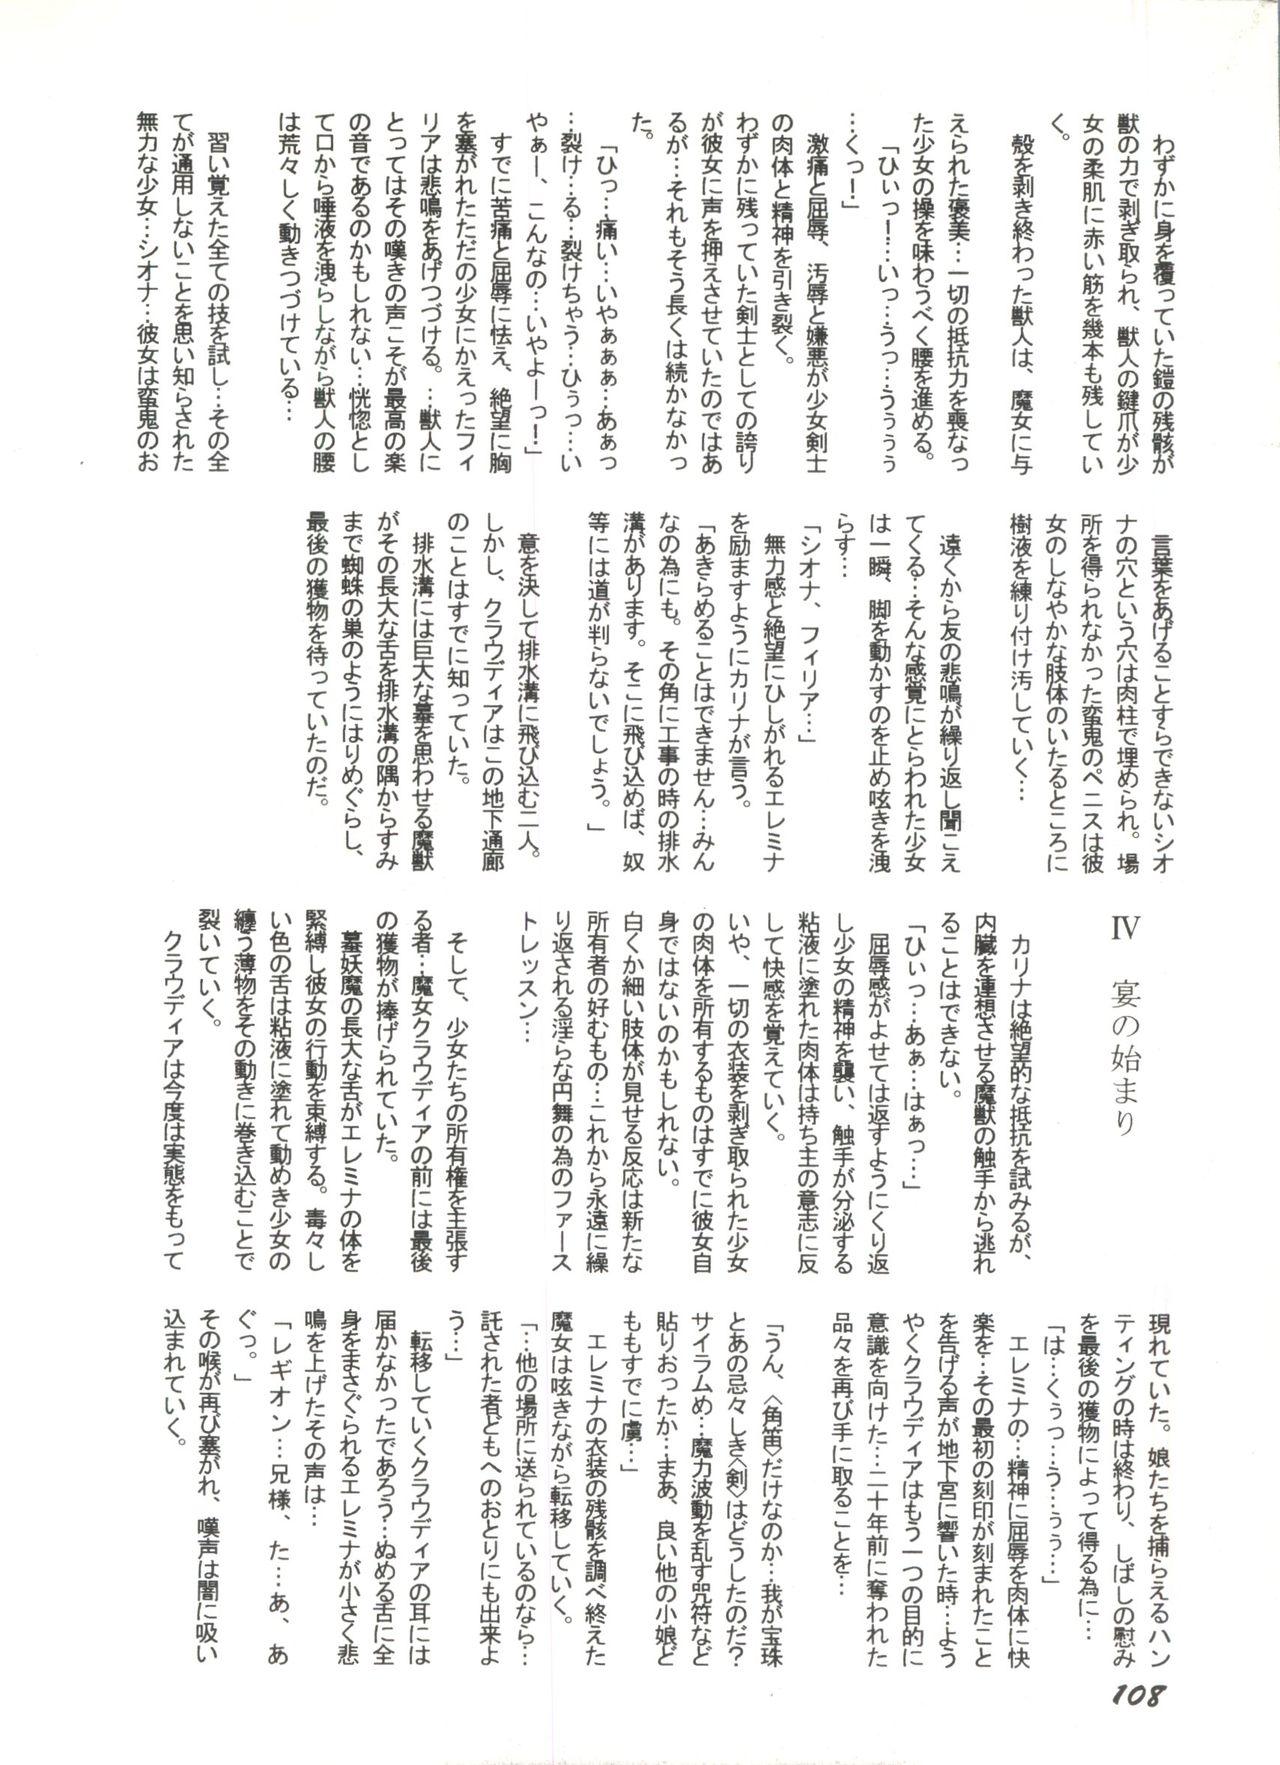 Bishoujo Doujinshi Anthology 1 109